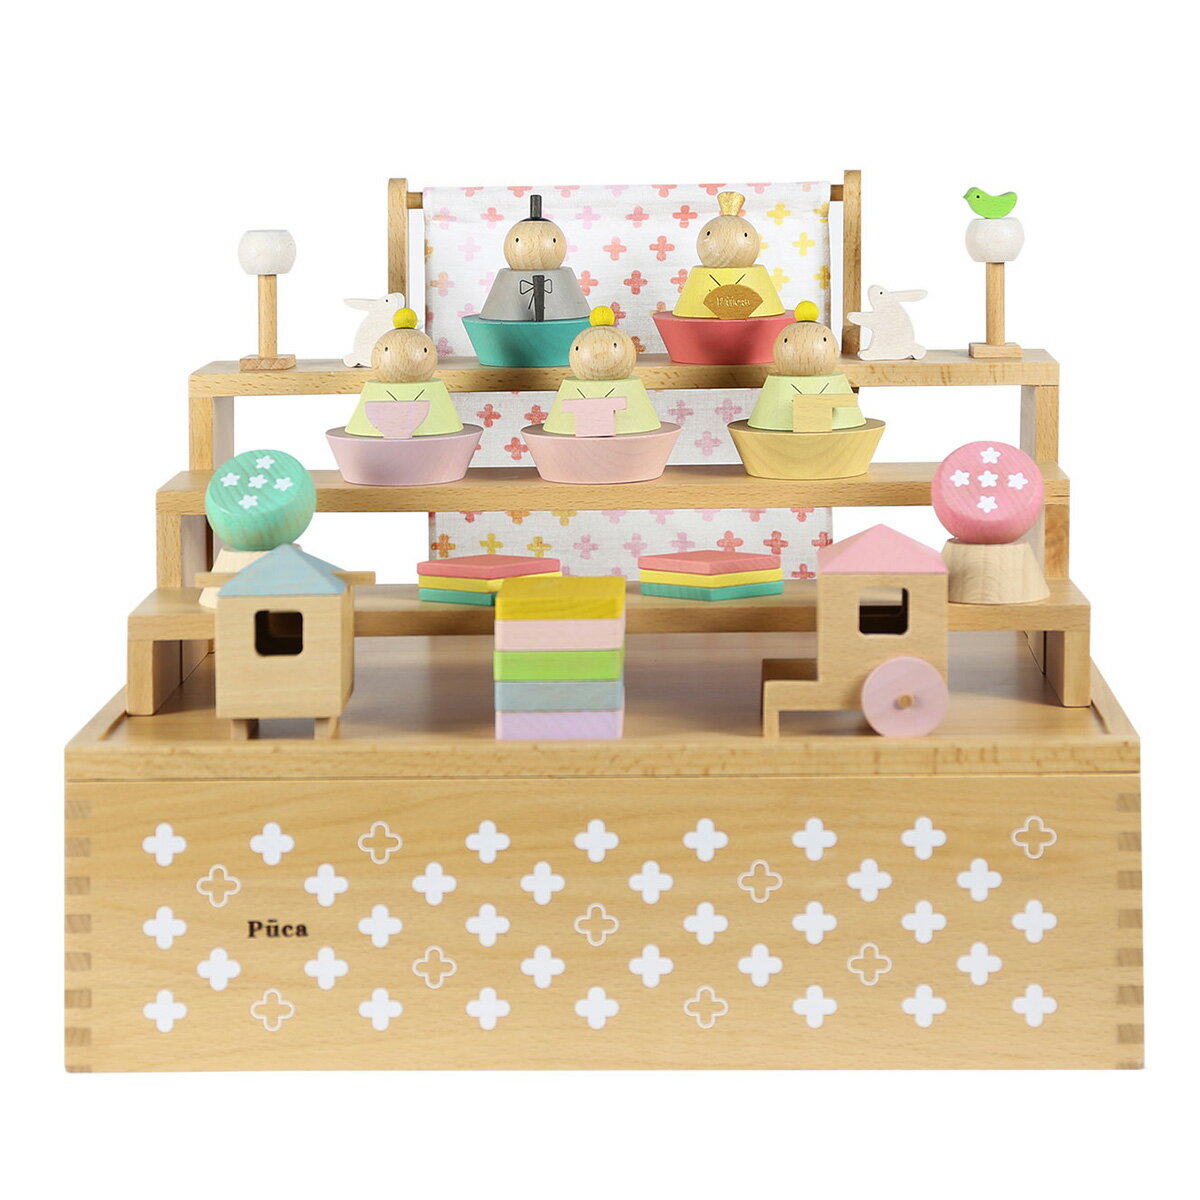 雛人形 木製 ナチュラル かわいい Puca HAKO 積み木 プーカのひな人形 収納箱